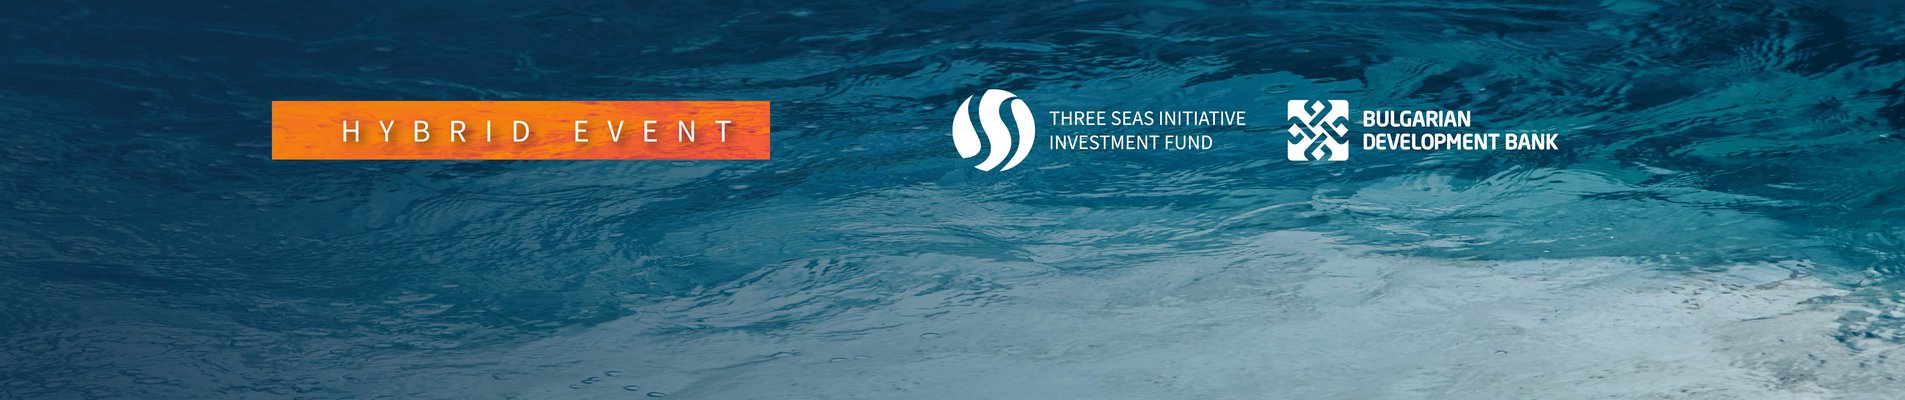 ББР бе домакин на конференция, посветена на възможностите за финансиране от Инвестиционния фонд „Три морета“